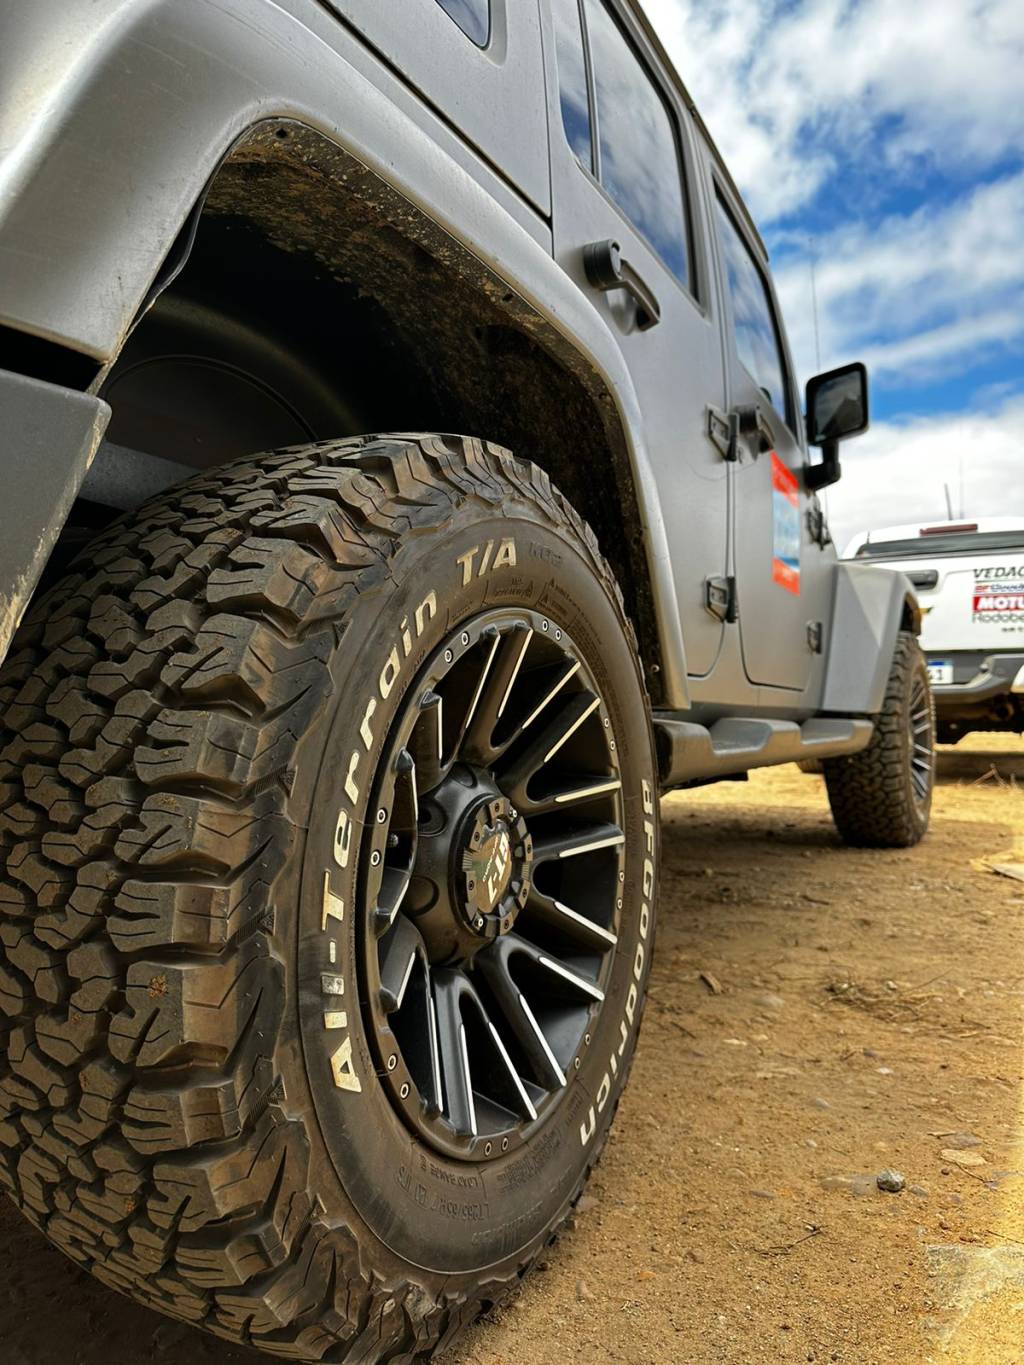 FGoodrich possui opções de pneus especialmente voltados para uso na areia, no barro e em terrenos mais duros